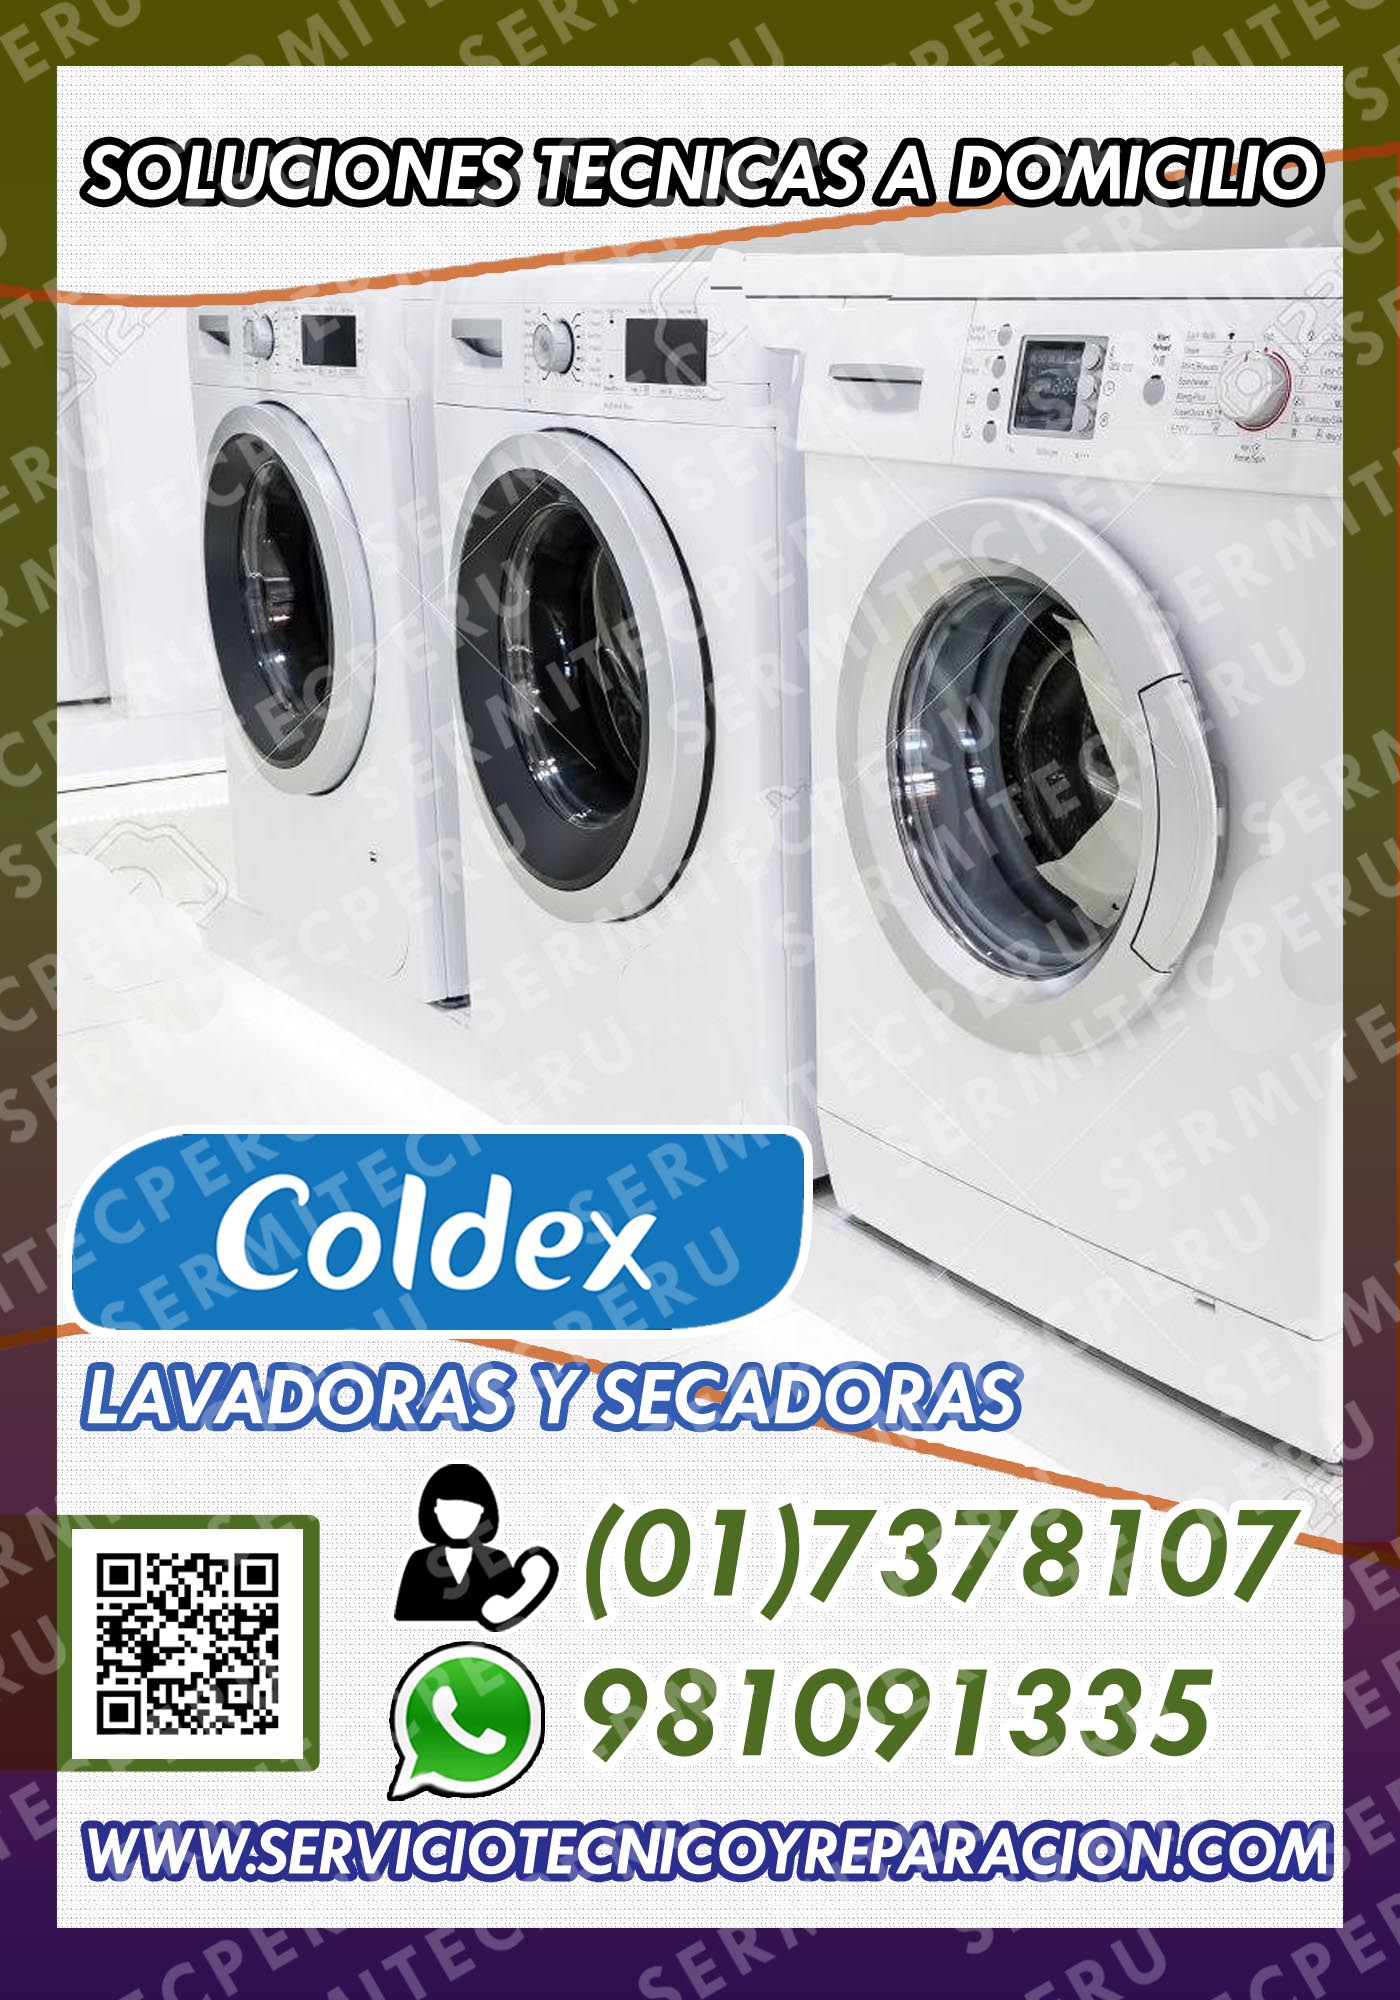 Asistencia Técnica COLDEX: lavadoras-secadoras>en  Barranco 7378107